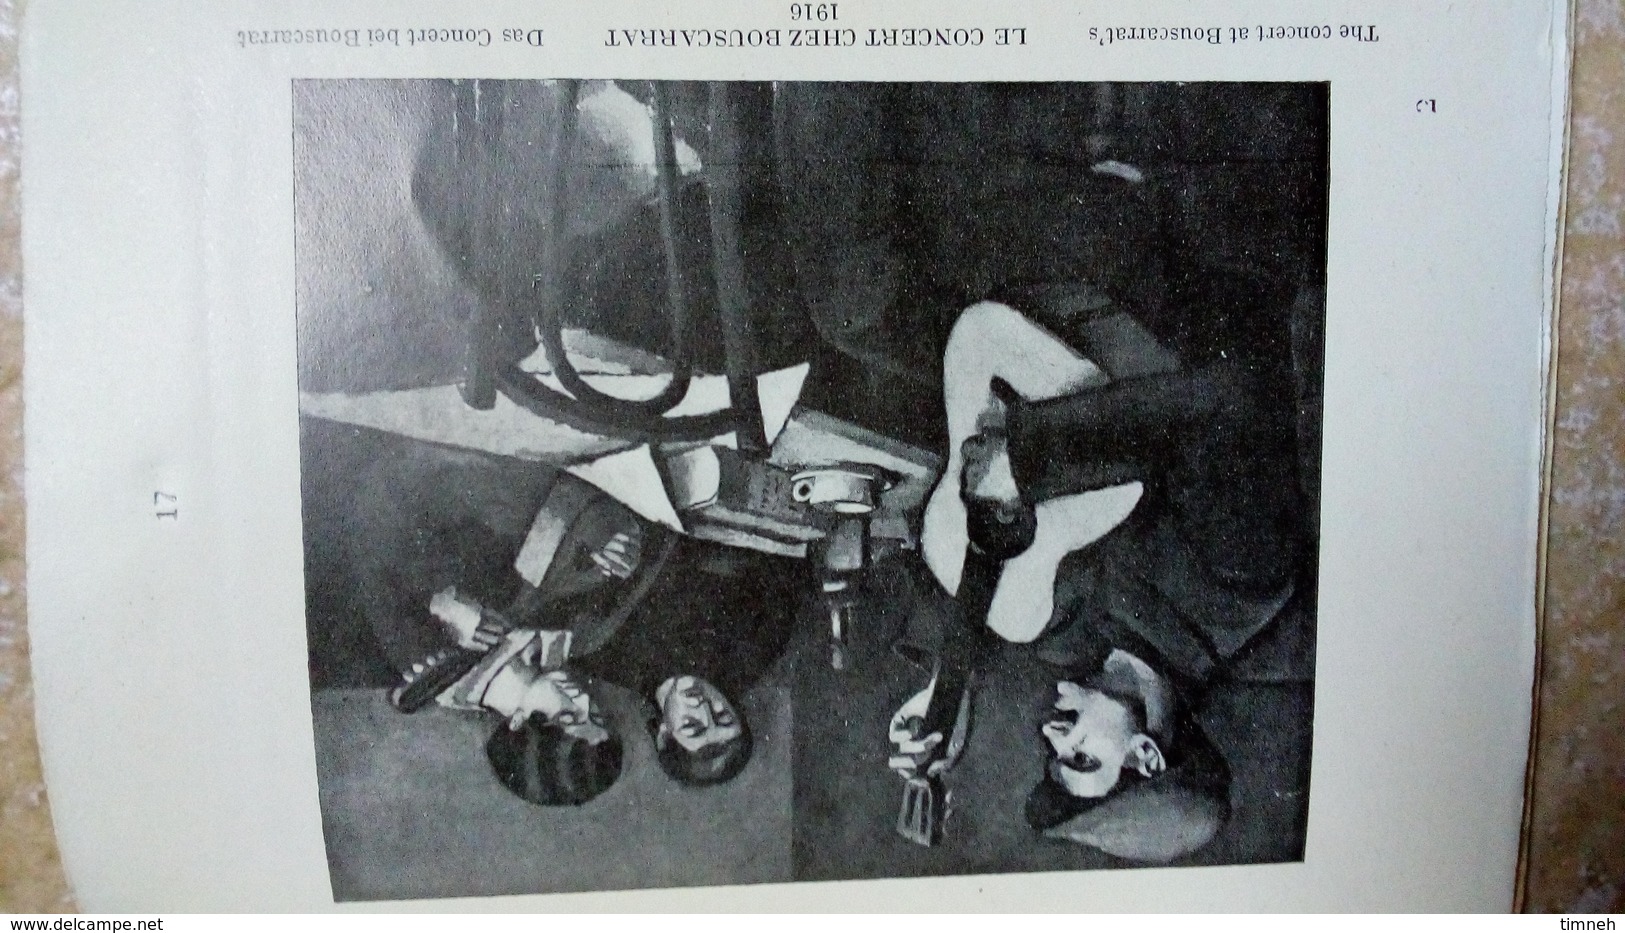 Francis Carco - Maurice Asselin - les peintres français nouveaux n°18 EX. 52/215 - 1924 - signé crayon Aubert graveur